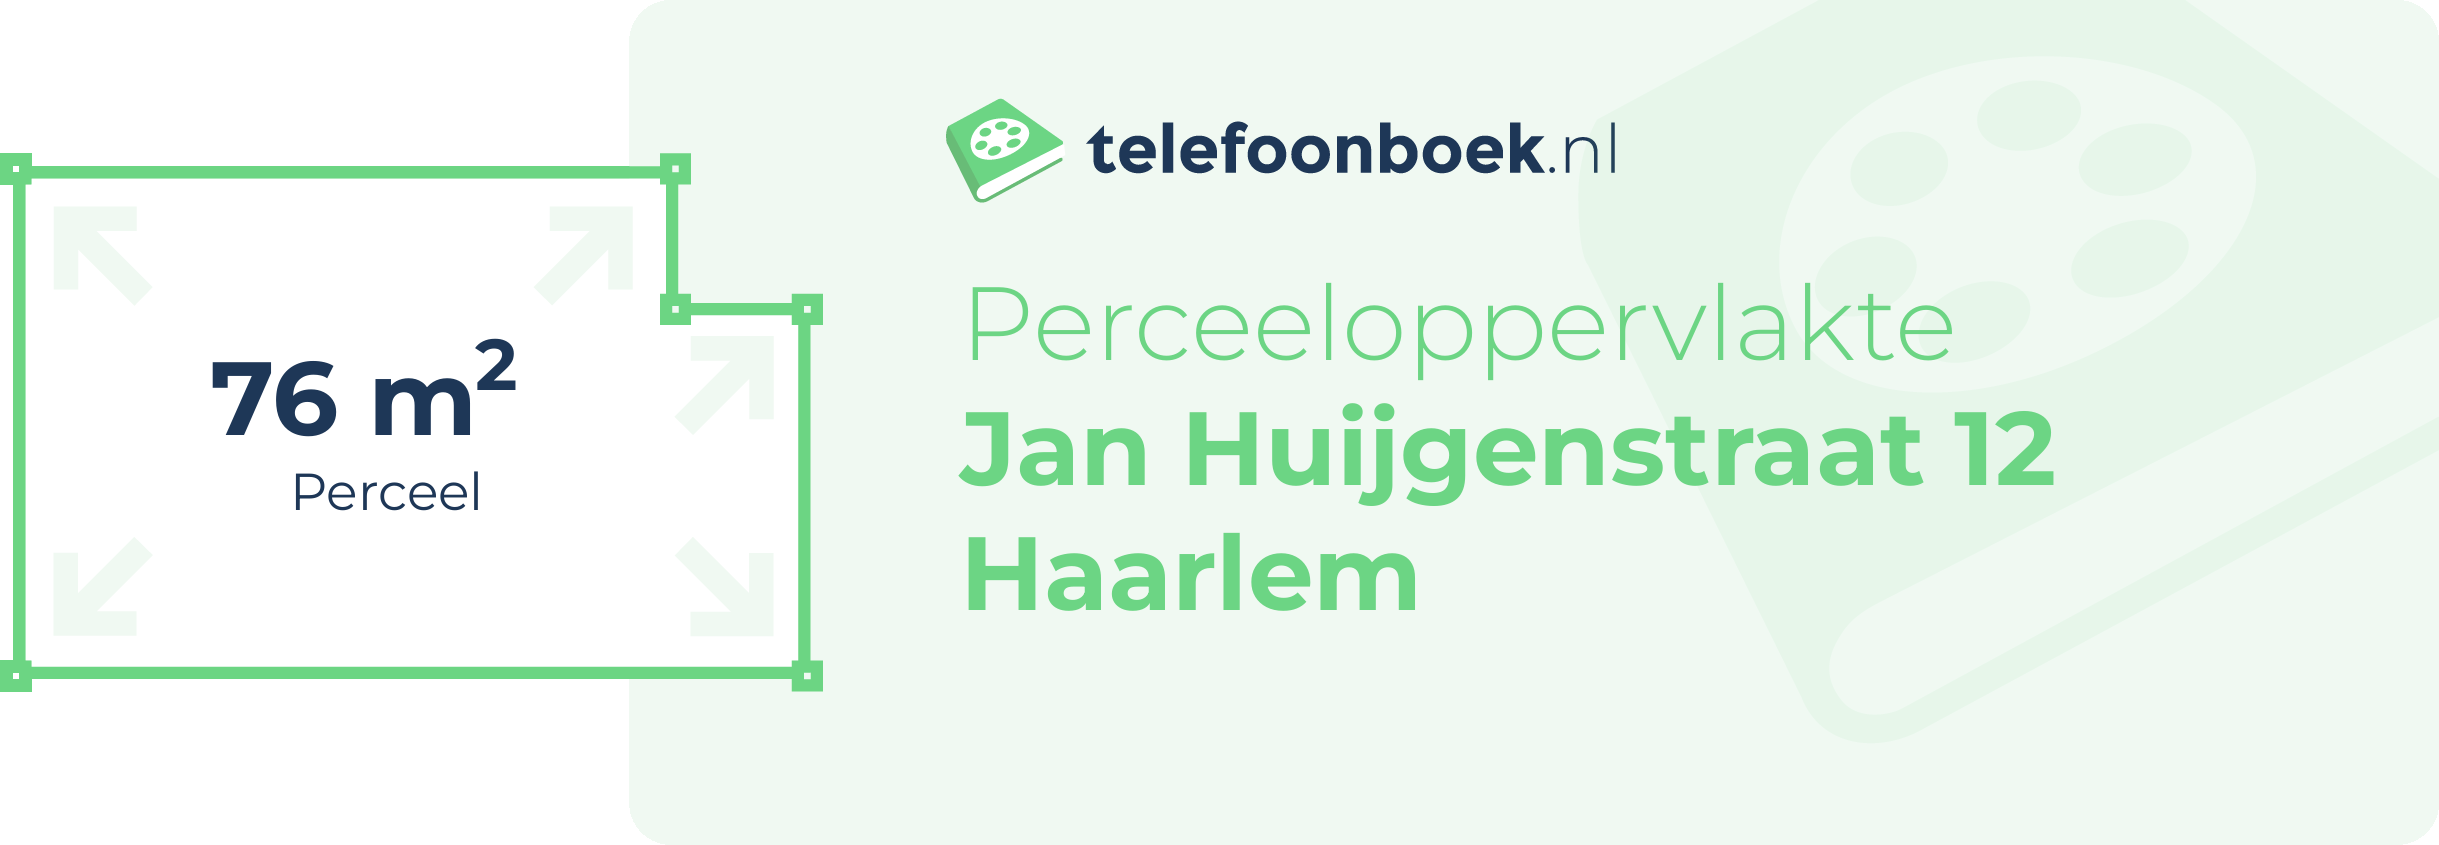 Perceeloppervlakte Jan Huijgenstraat 12 Haarlem